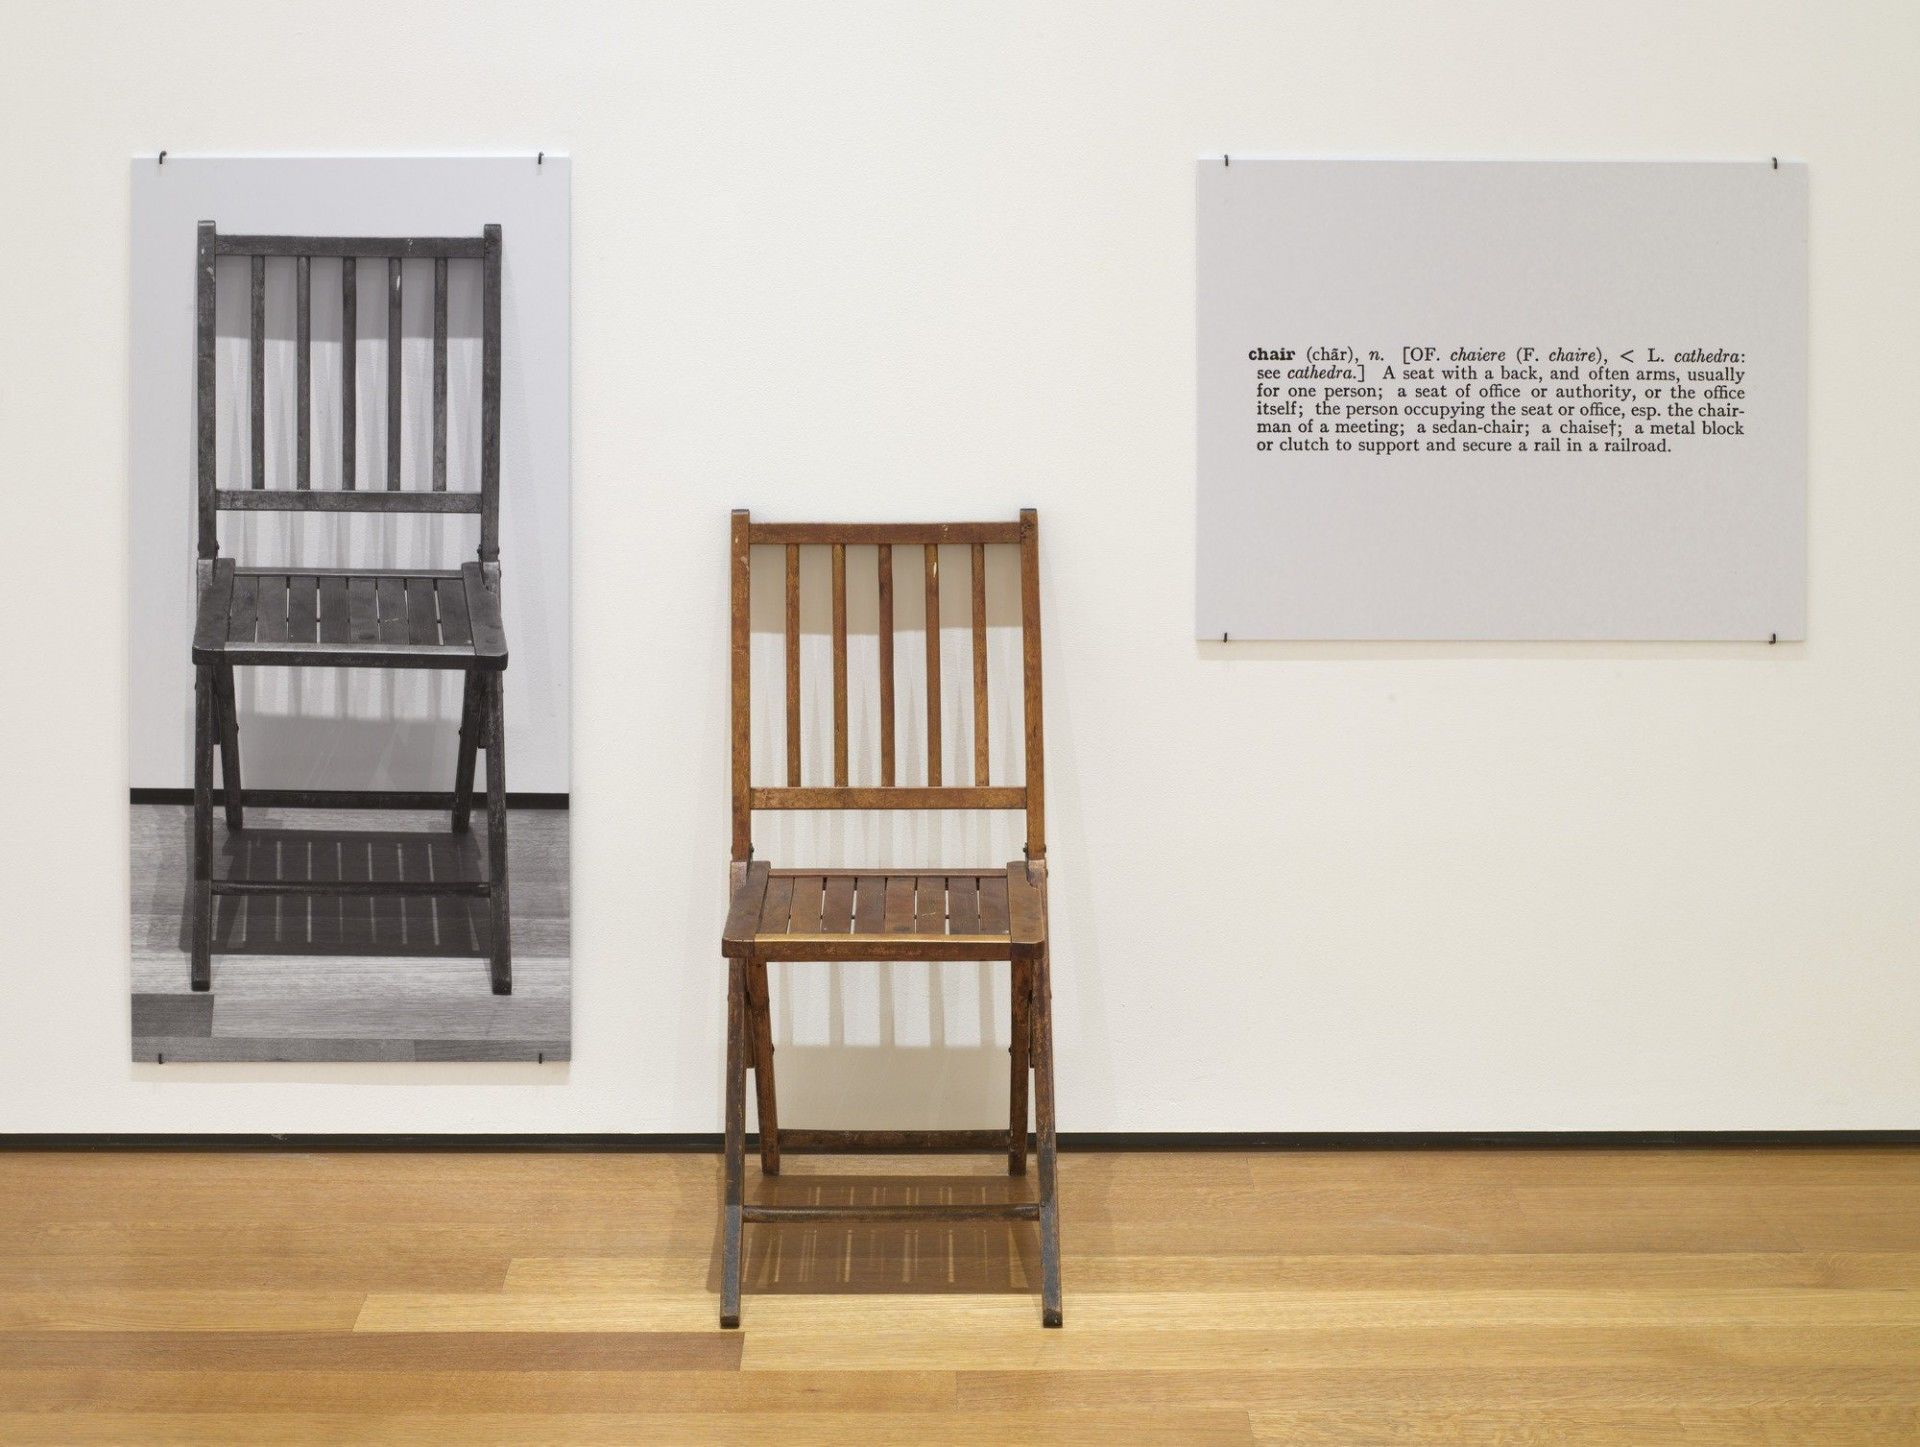 6. Échantillon d'art contemporain de Joseph Kosuth, One and Three Chairs, 1965. Chaise pliante en bois, photographie montée d'une chaise et agrandissement photographique monté de la définition de 